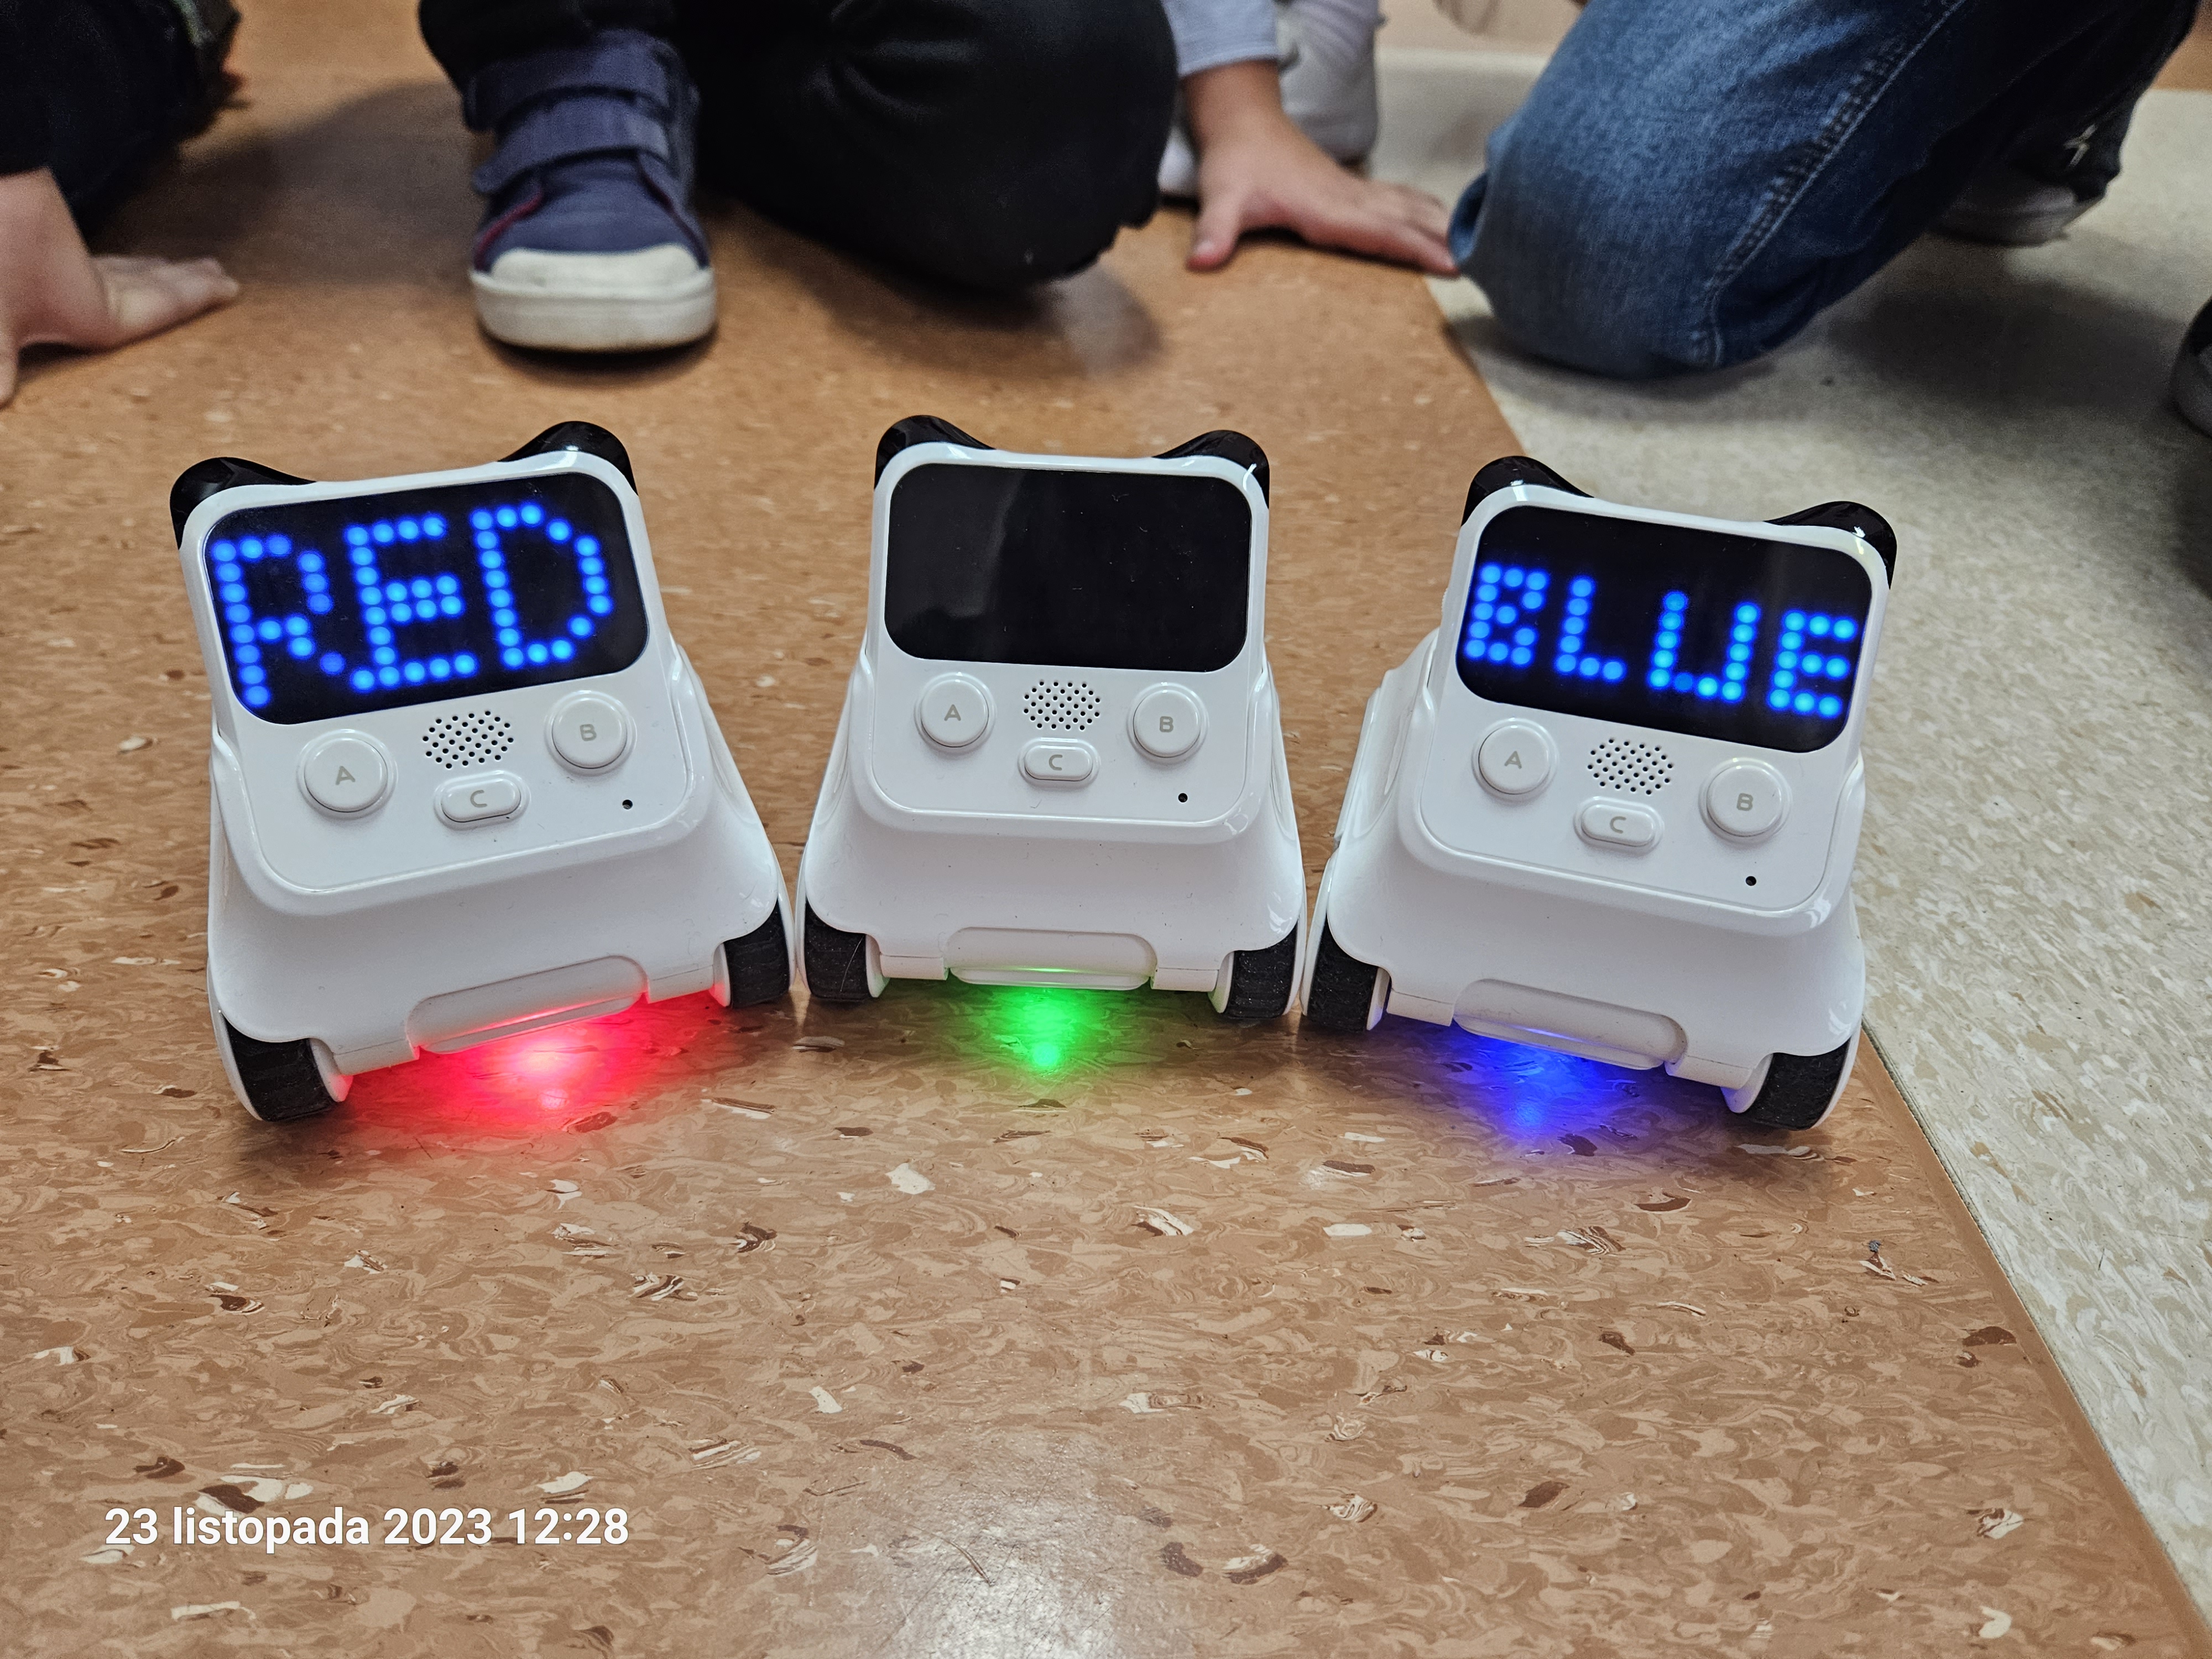 Na zdjęciu są roboty edukacyjne wyświetlające napis "red", "blue" i "green" oraz odpowiednio diody w kolorach.